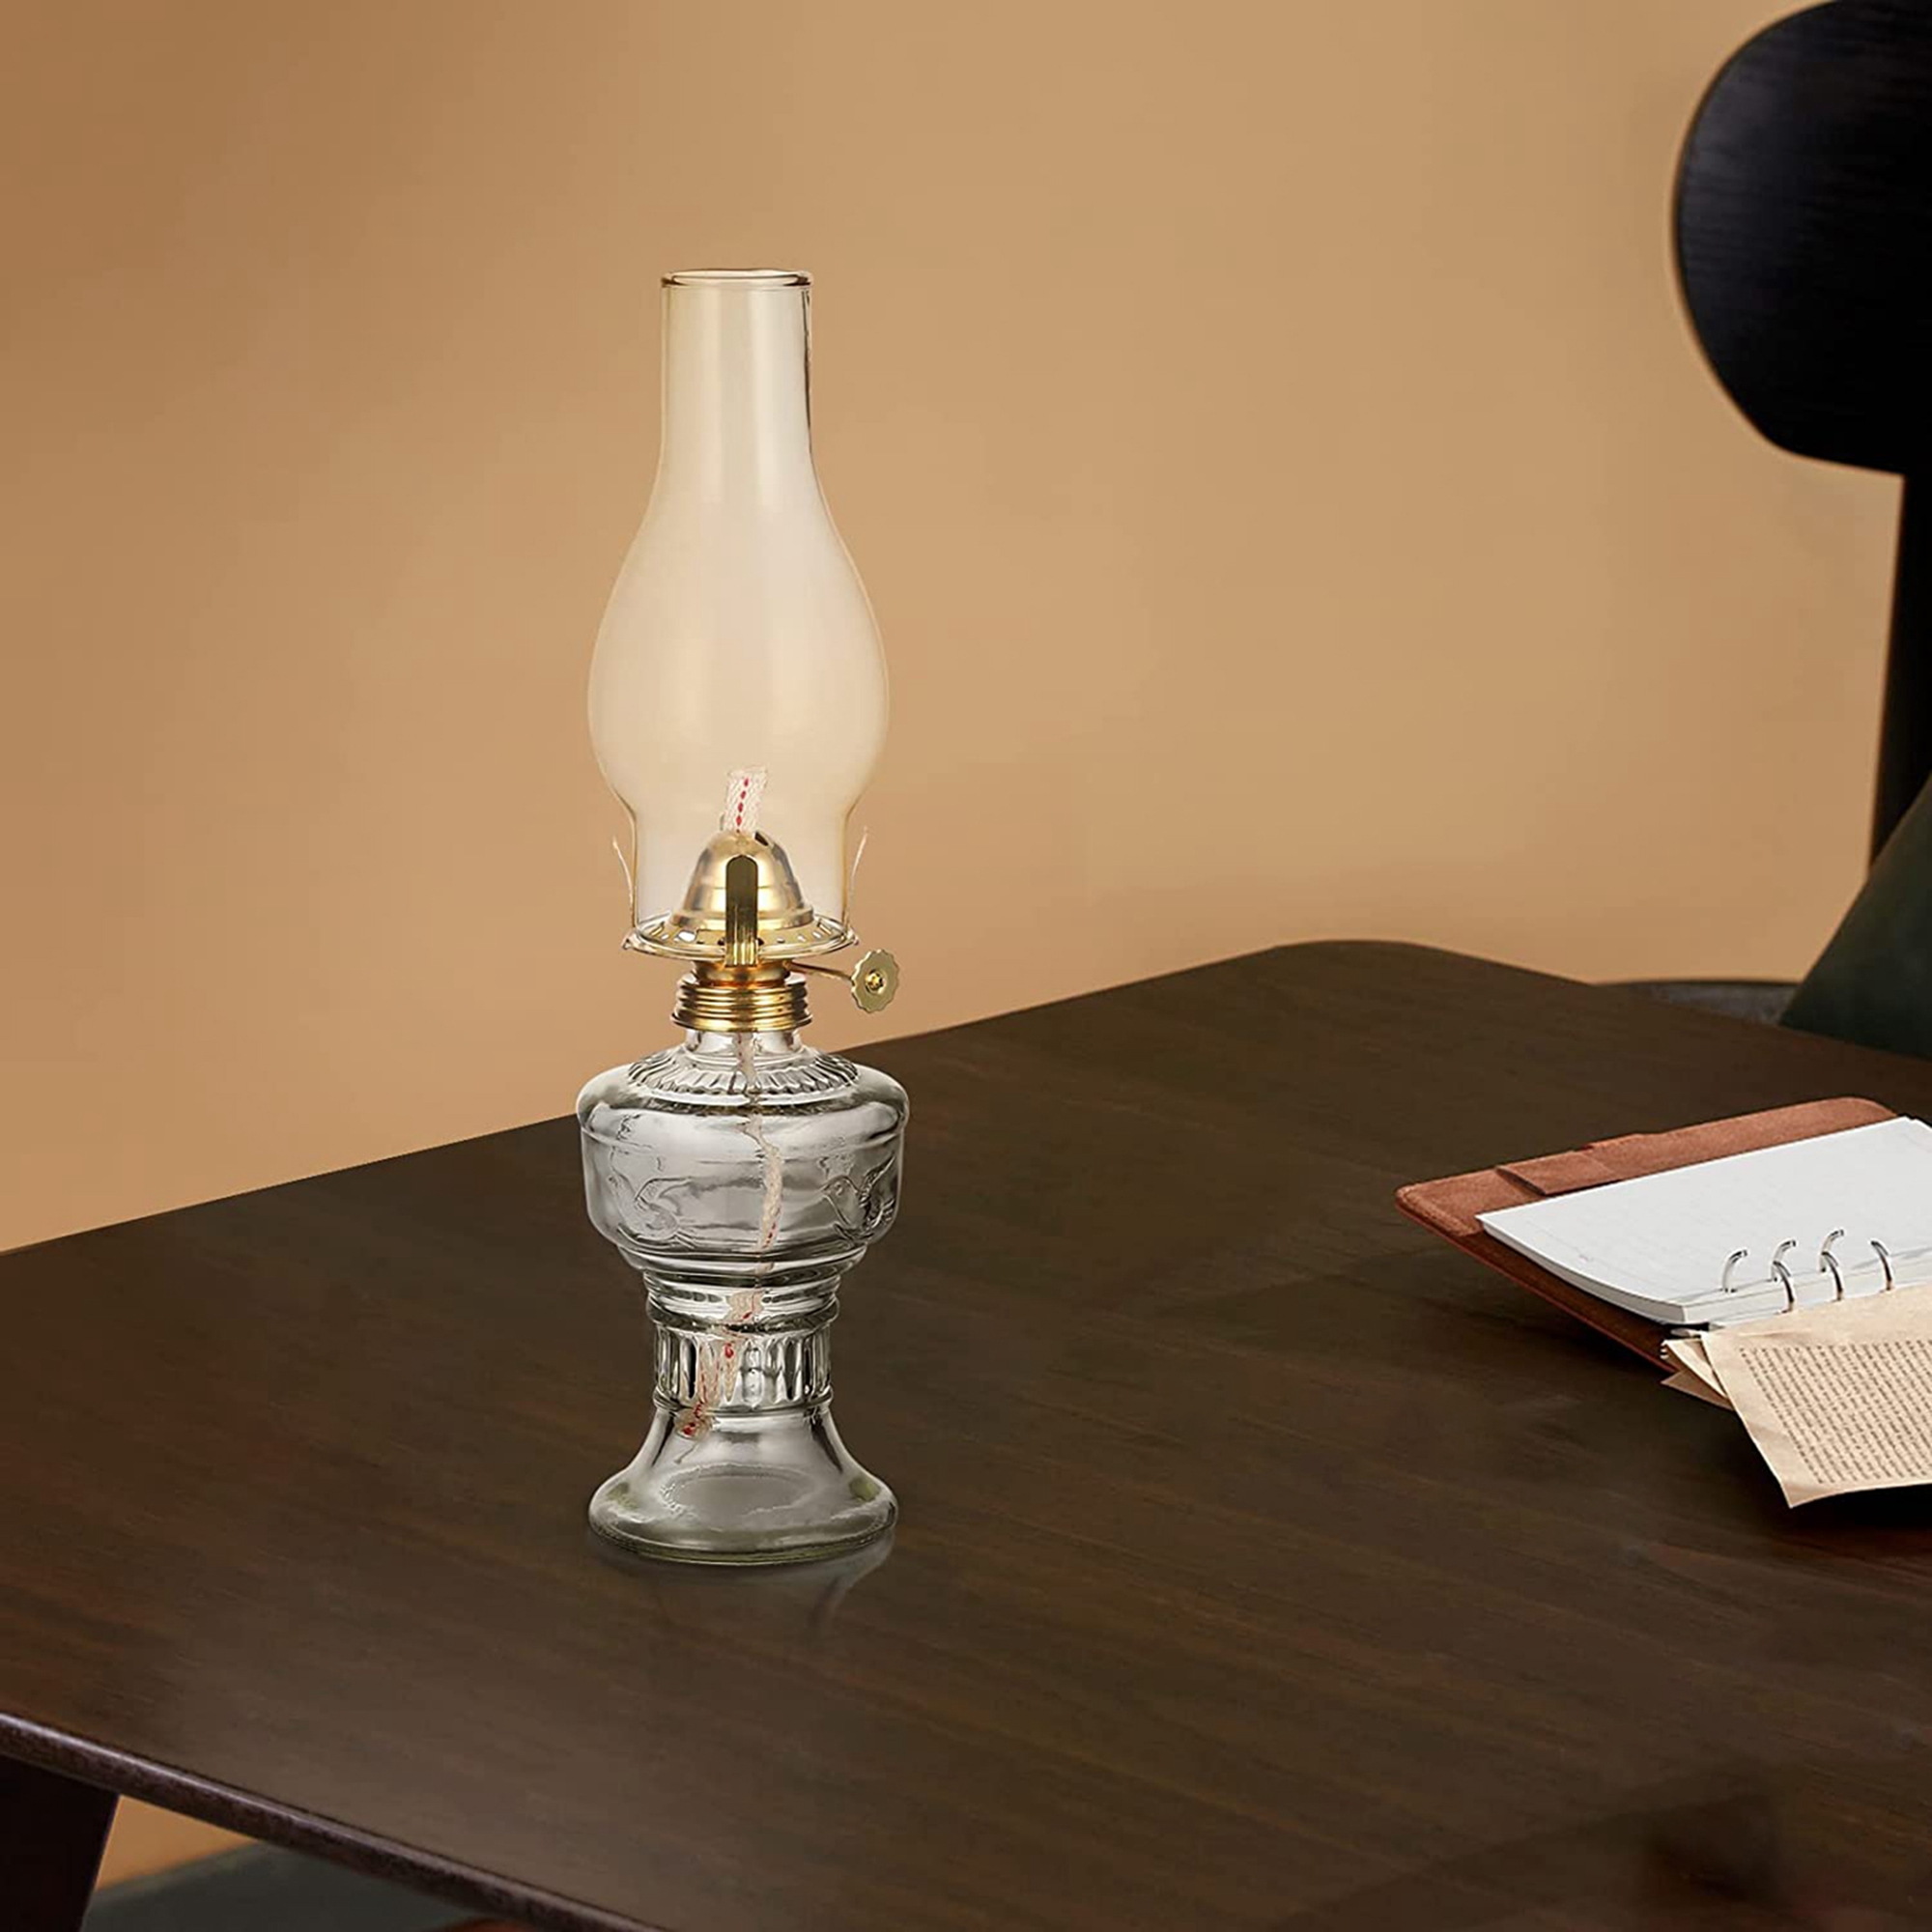 Large Oil Lamp Lantern Vintage Glass Kerosene Lamp 12.5'' Chamber Oil Lamps  for Indoor Use Home Decor Lighting Oil Lantern